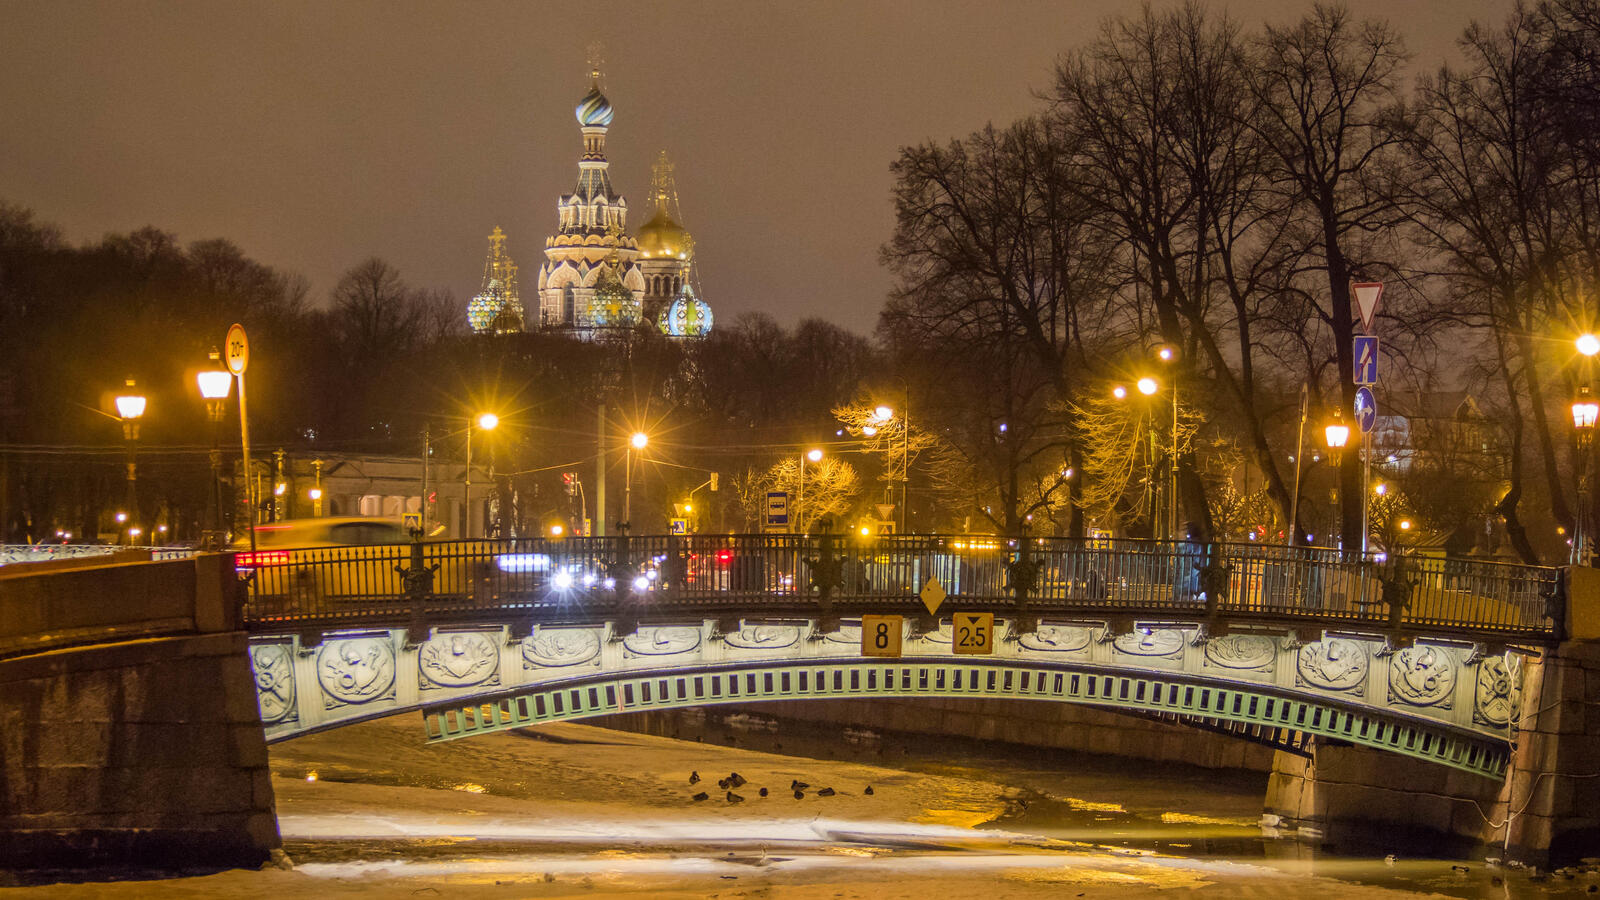 Бесплатное фото Санкт-петербург картинки на заставку, церковь спаса на крови бесплатно